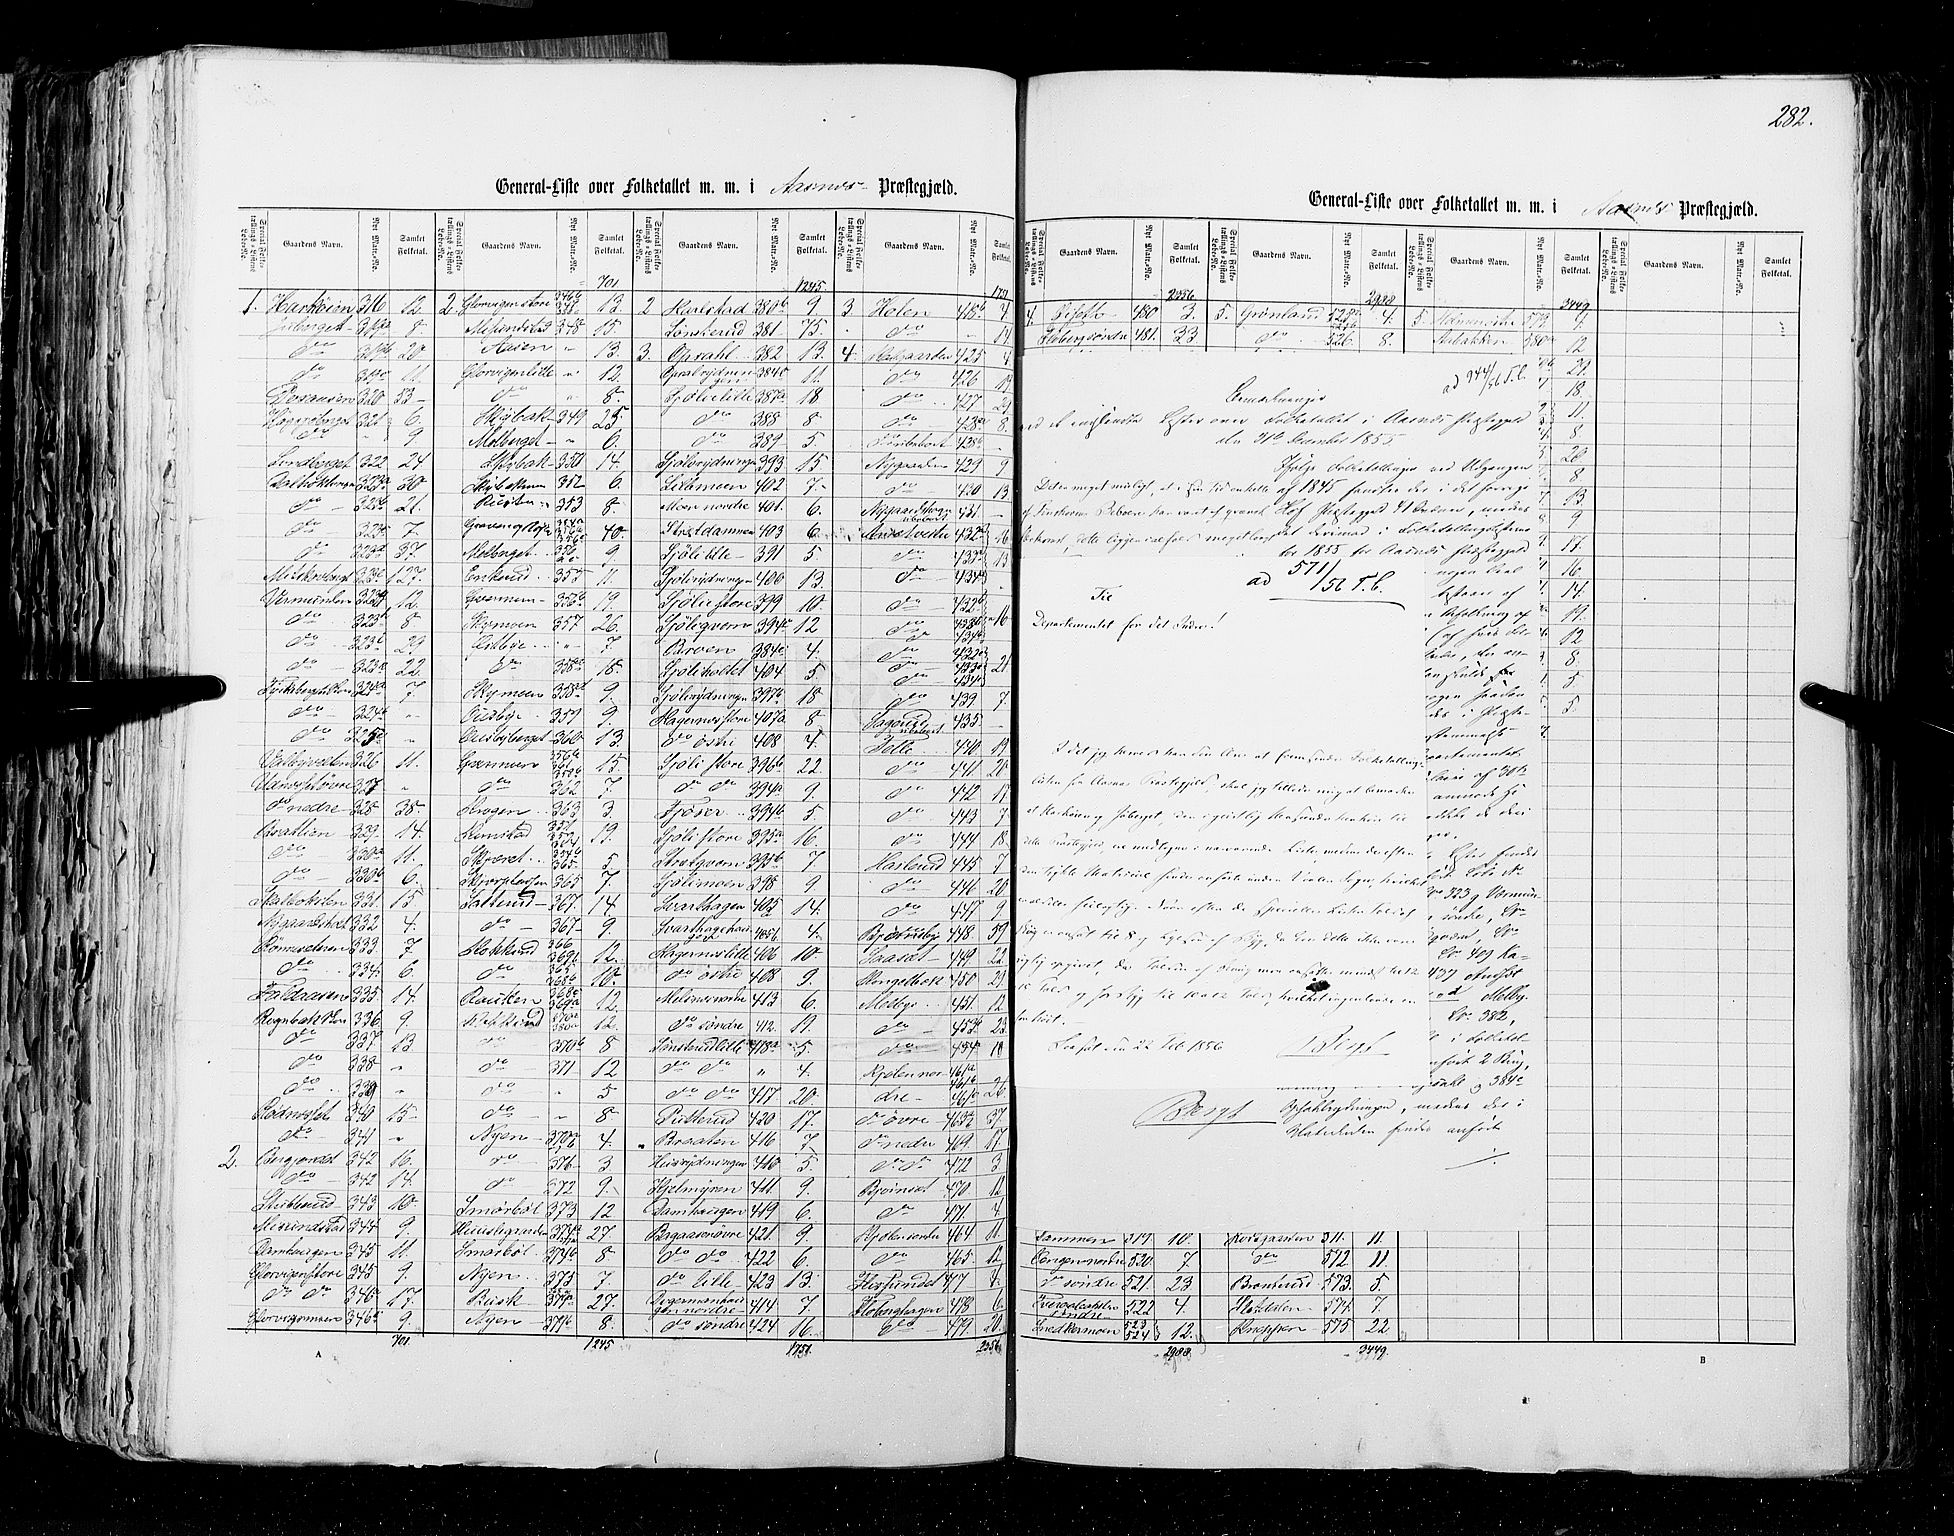 RA, Census 1855, vol. 1: Akershus amt, Smålenenes amt og Hedemarken amt, 1855, p. 282